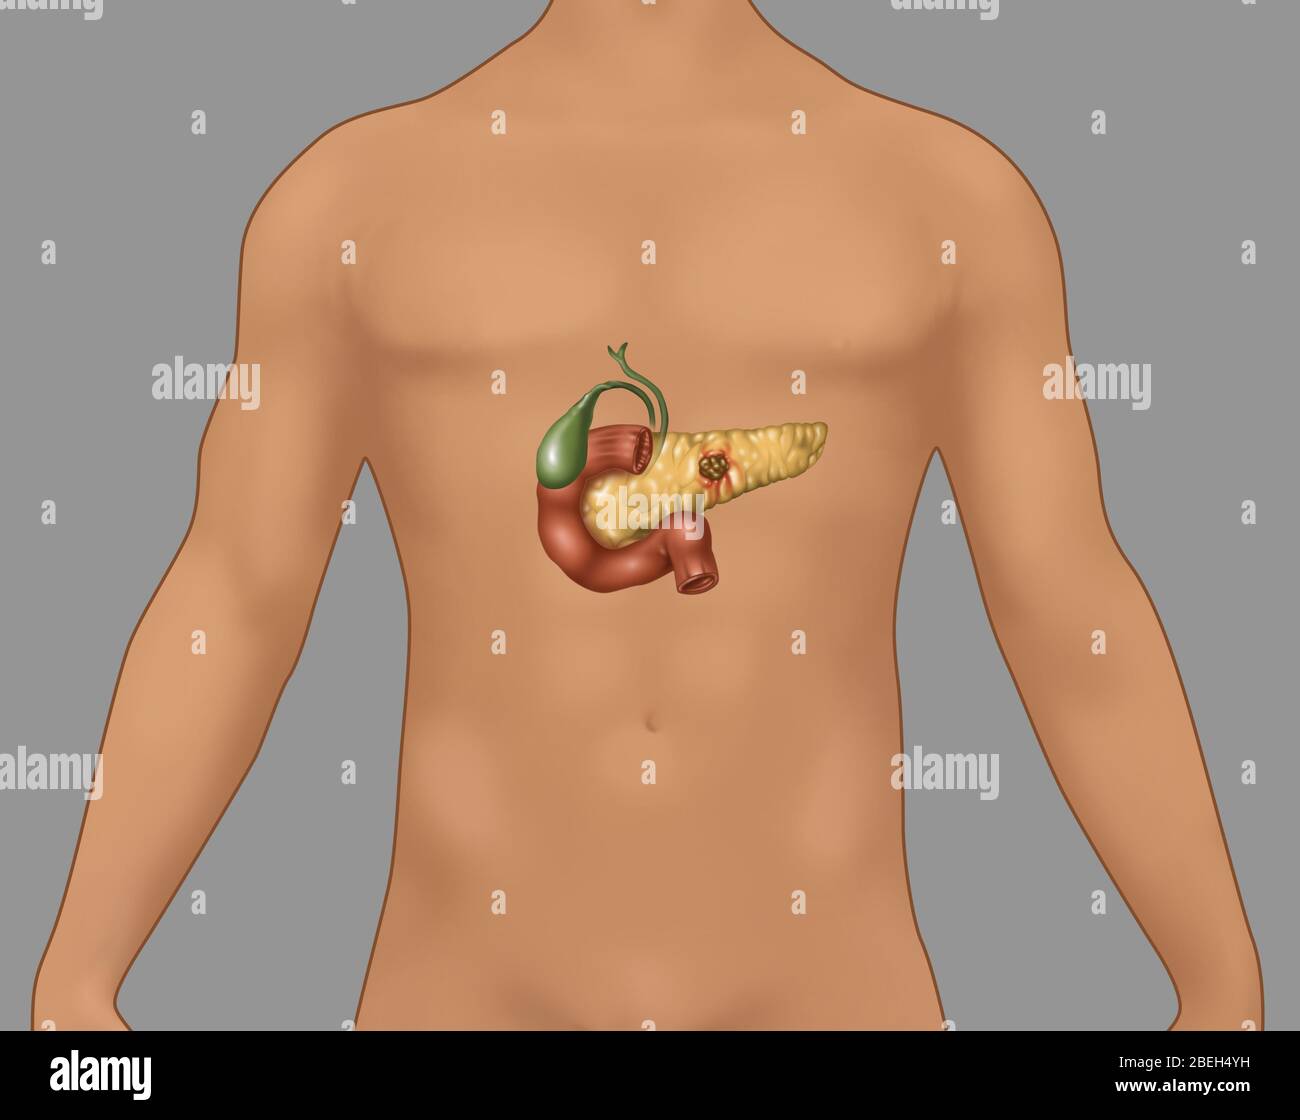 Pankreaskarzinom in männlicher Figur, Illustration Stockfoto